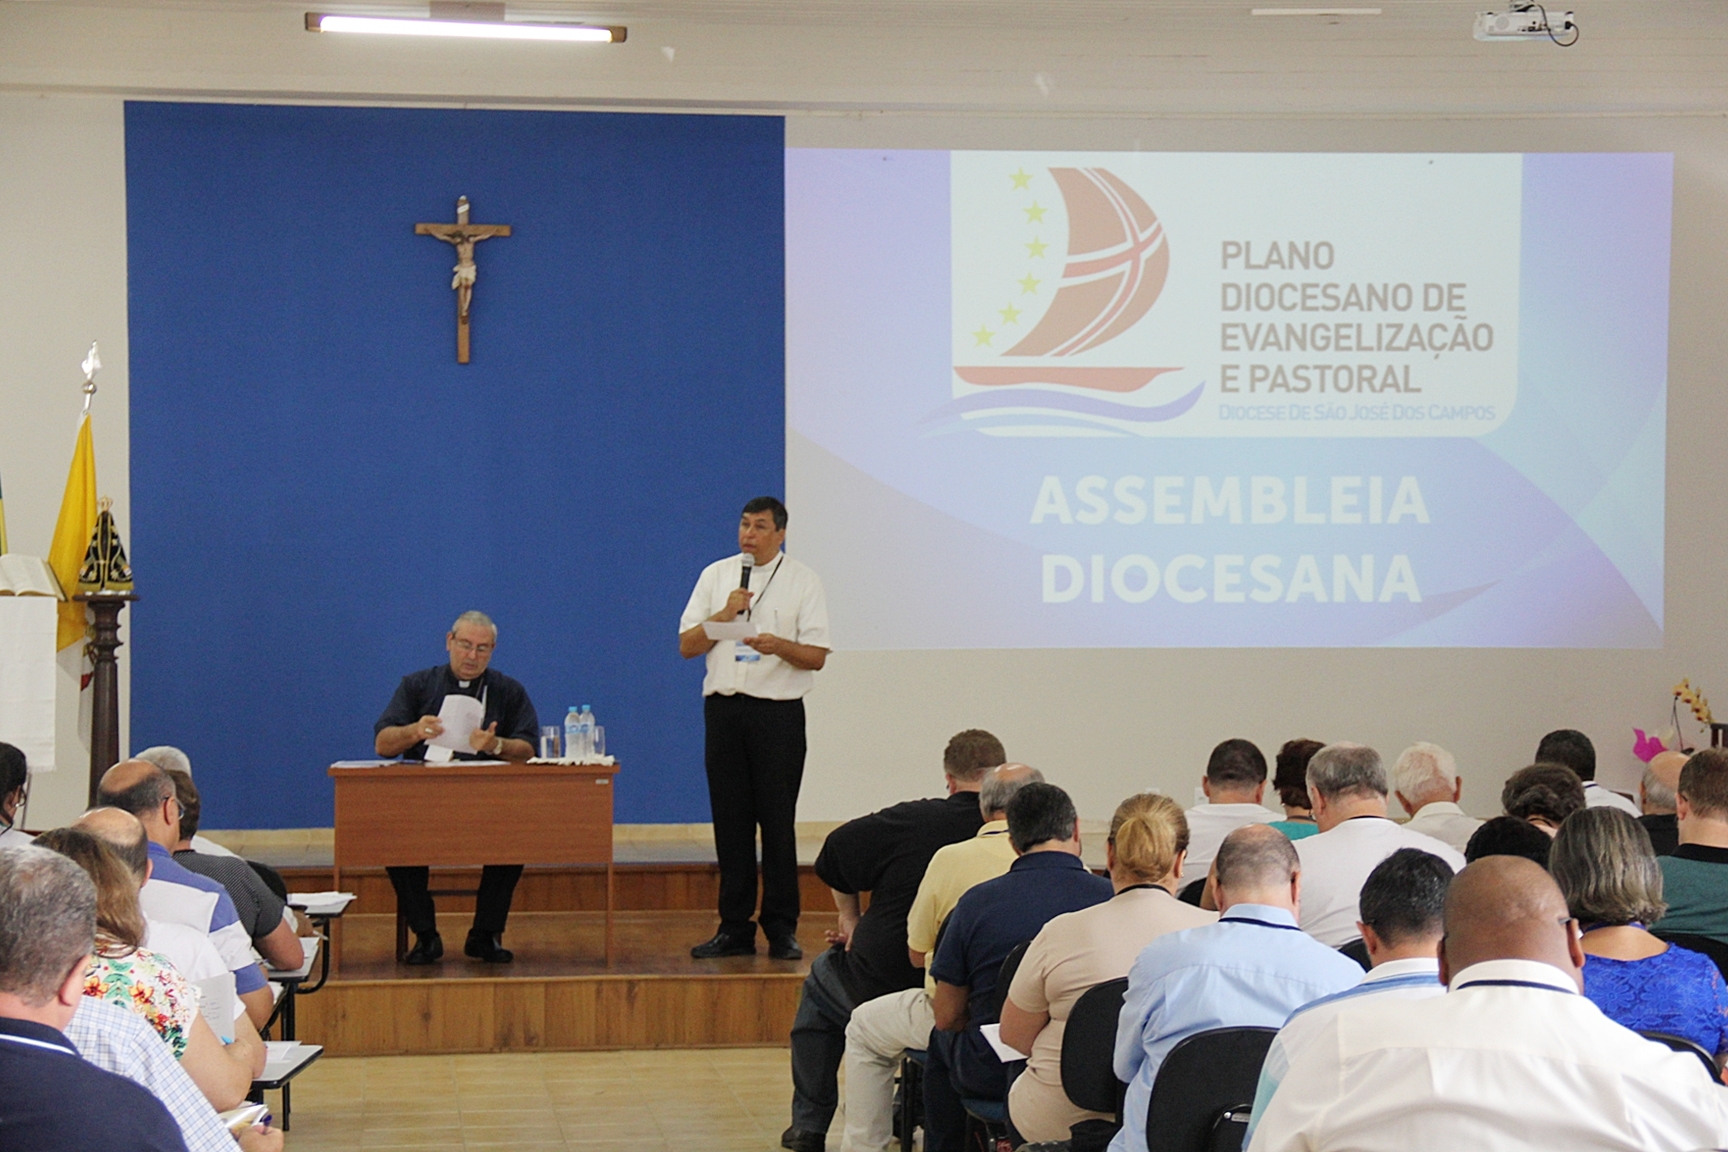 Assembleia Diocesana aprova Plano de Evangelização e Pastoral